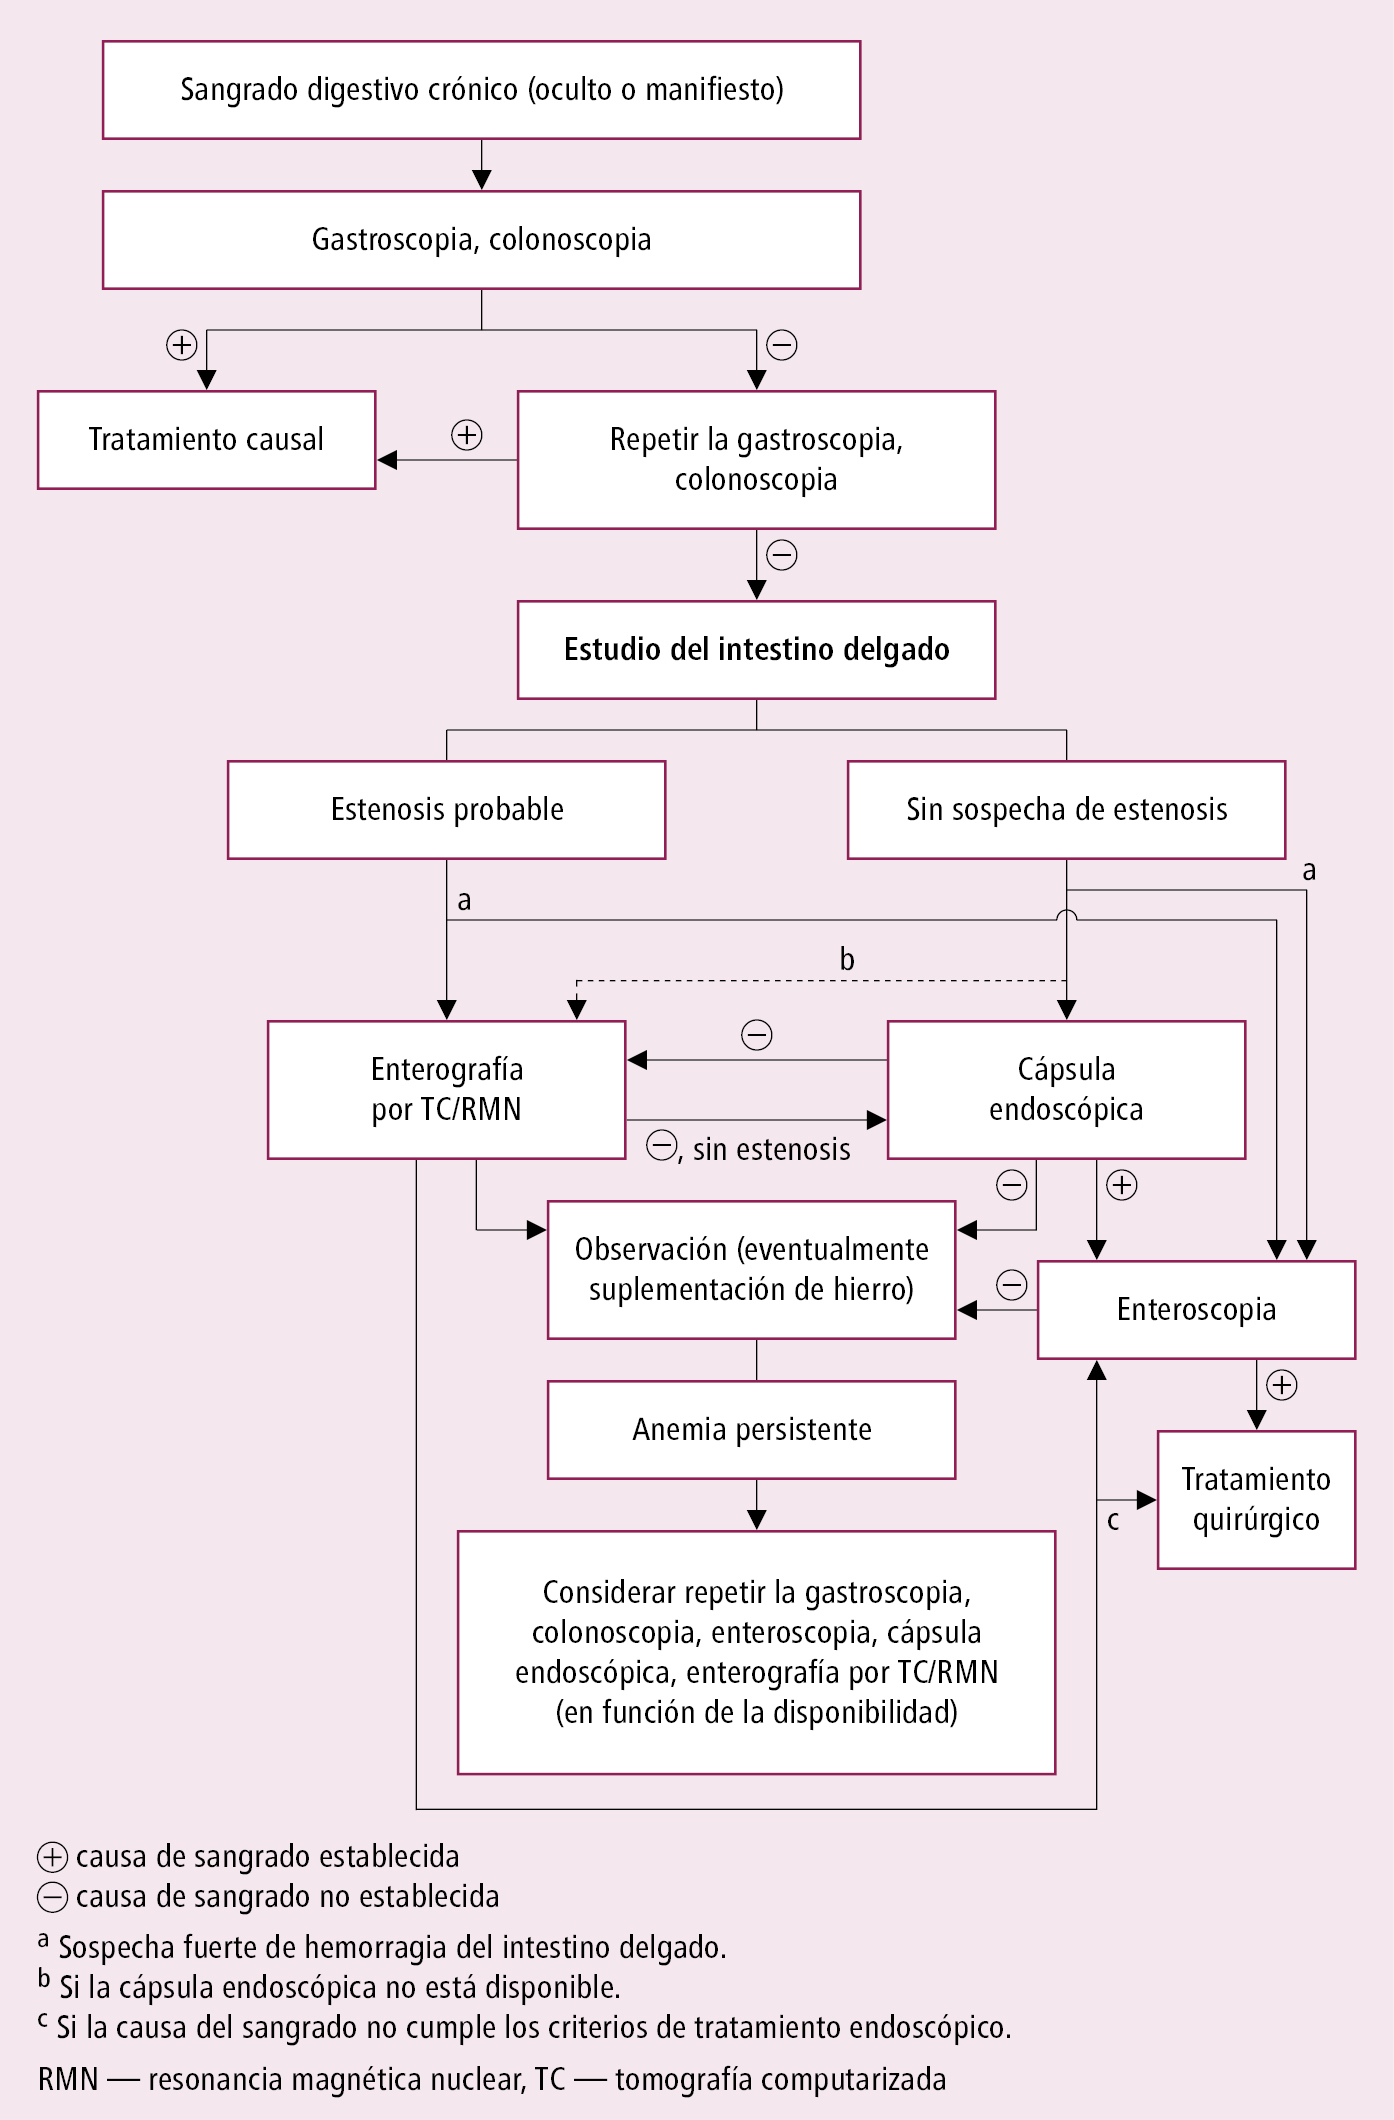    Fig. 4.30-1.  Algoritmo diagnóstico en enfermos con sangrado digestivo crónico (a partir de las guías del ACG 2016, modificado) 